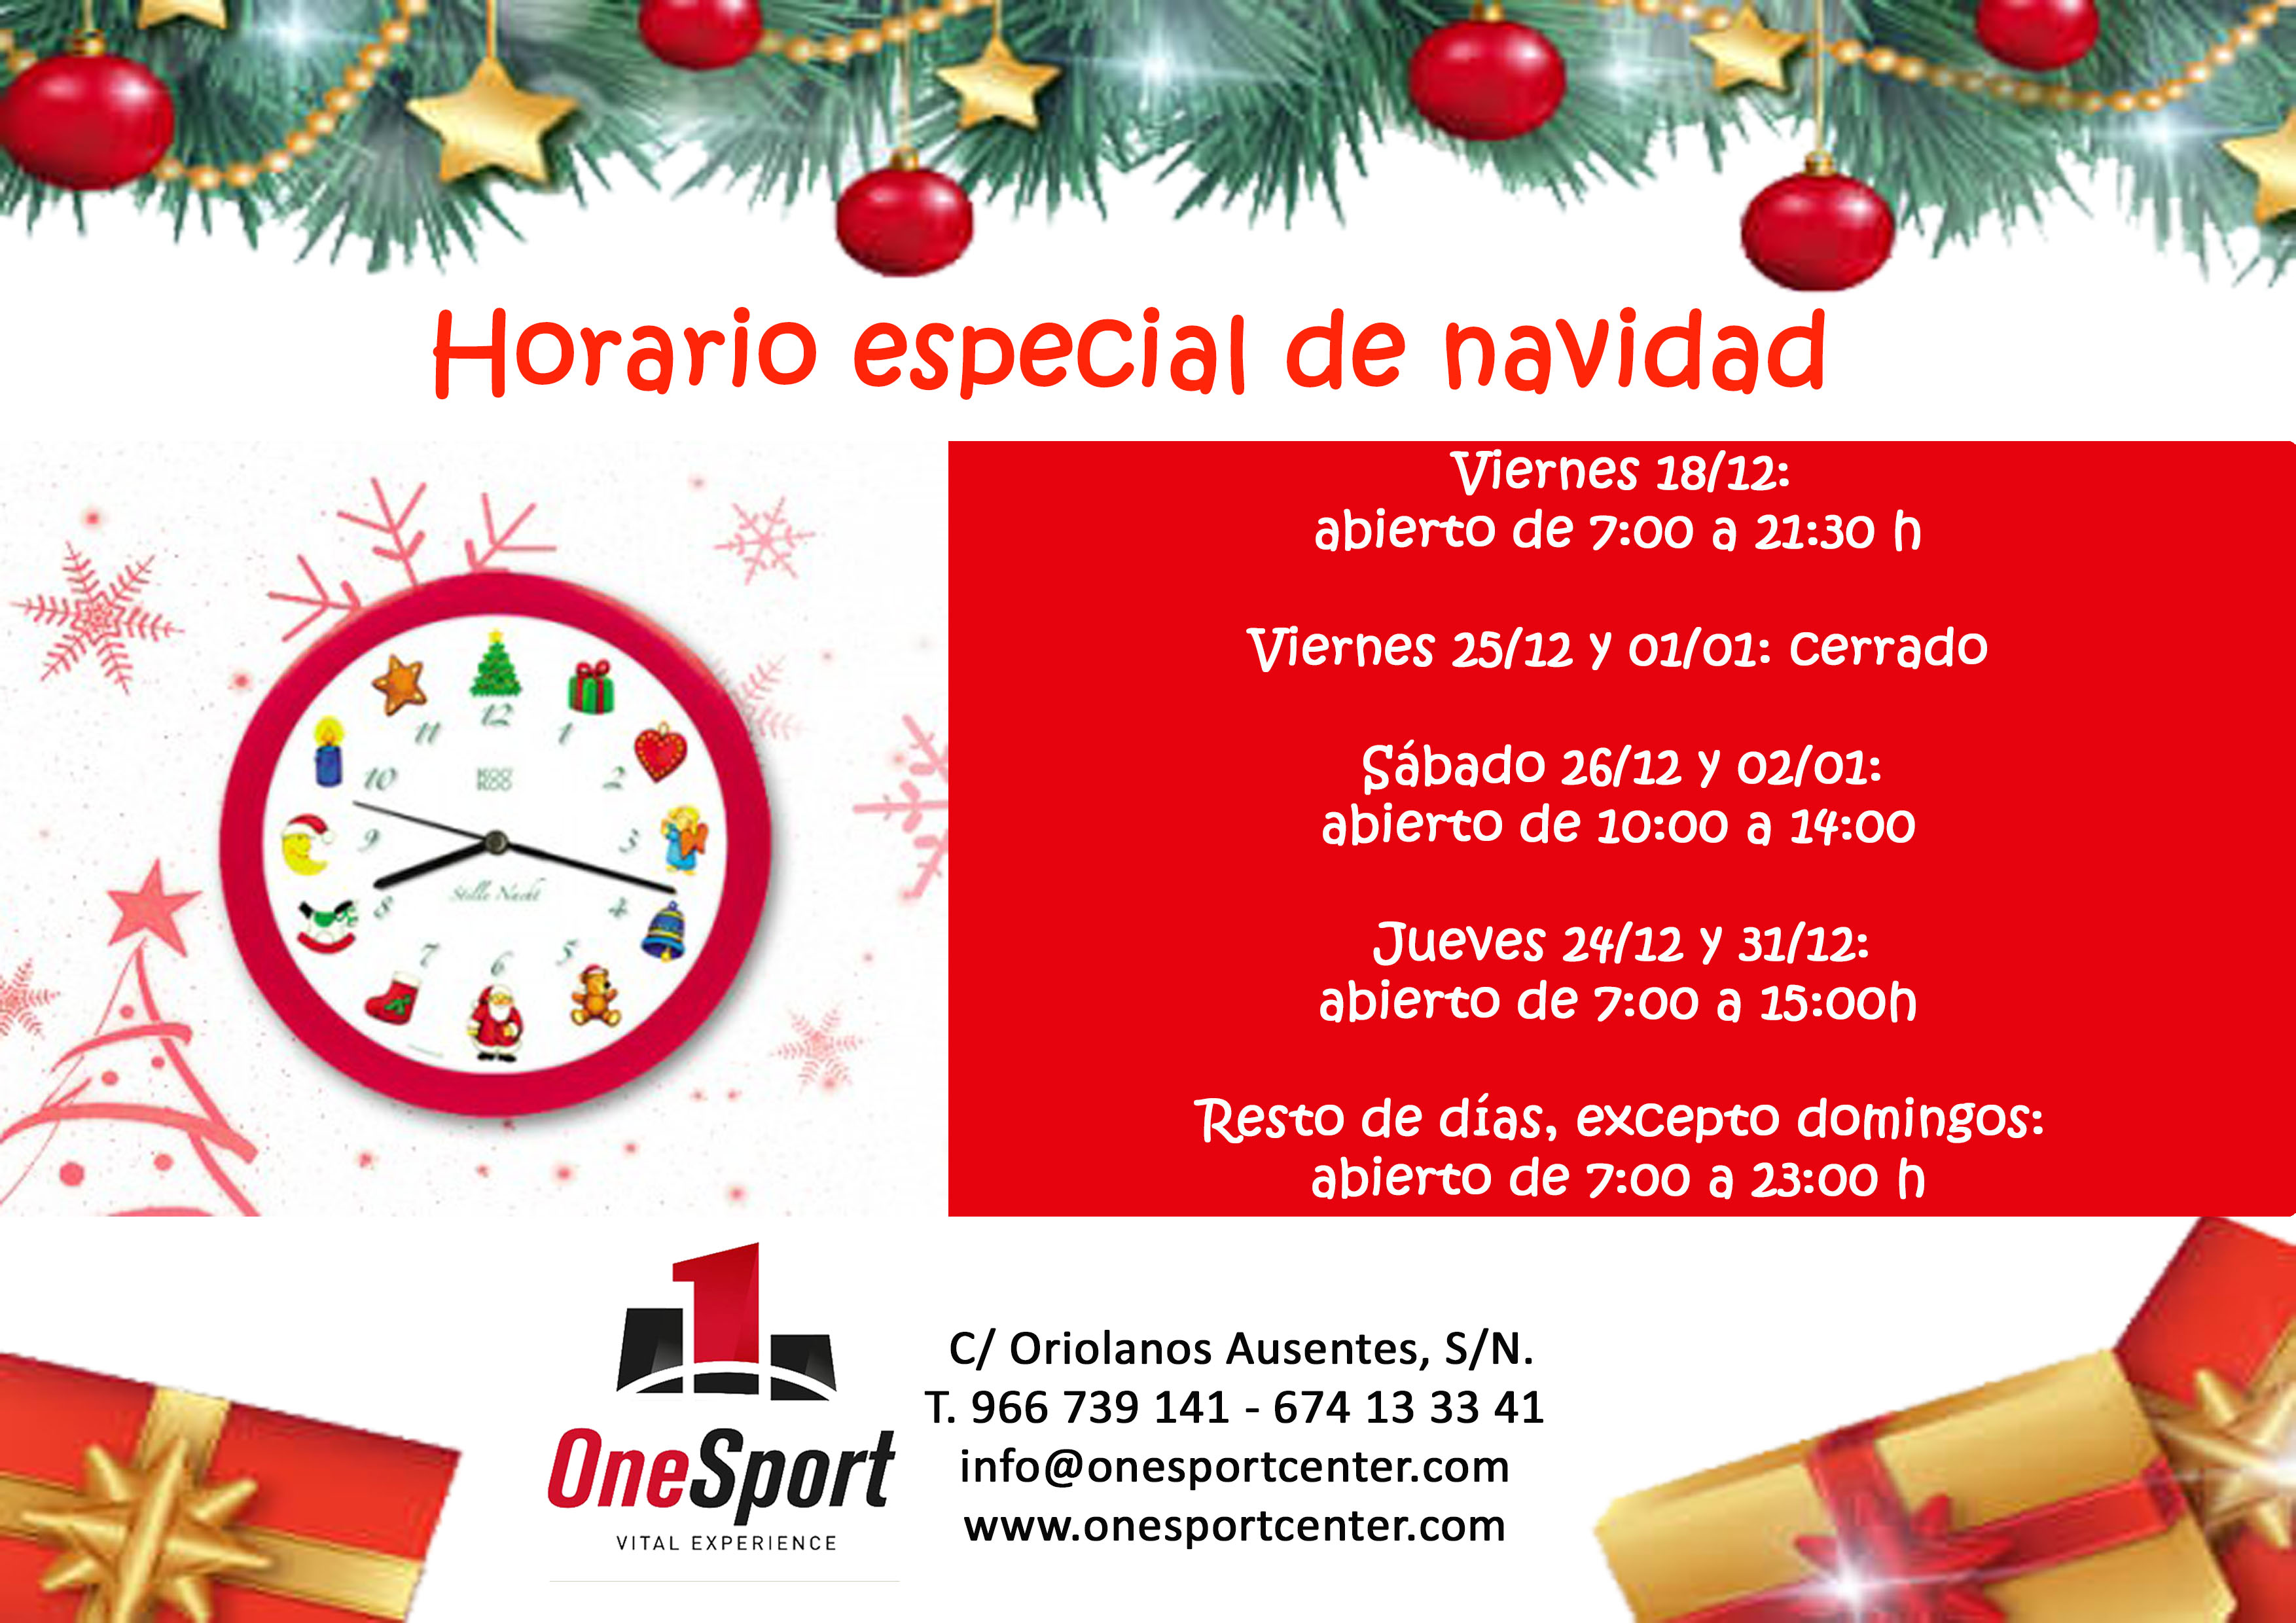 Horario especial navidad 2015/16